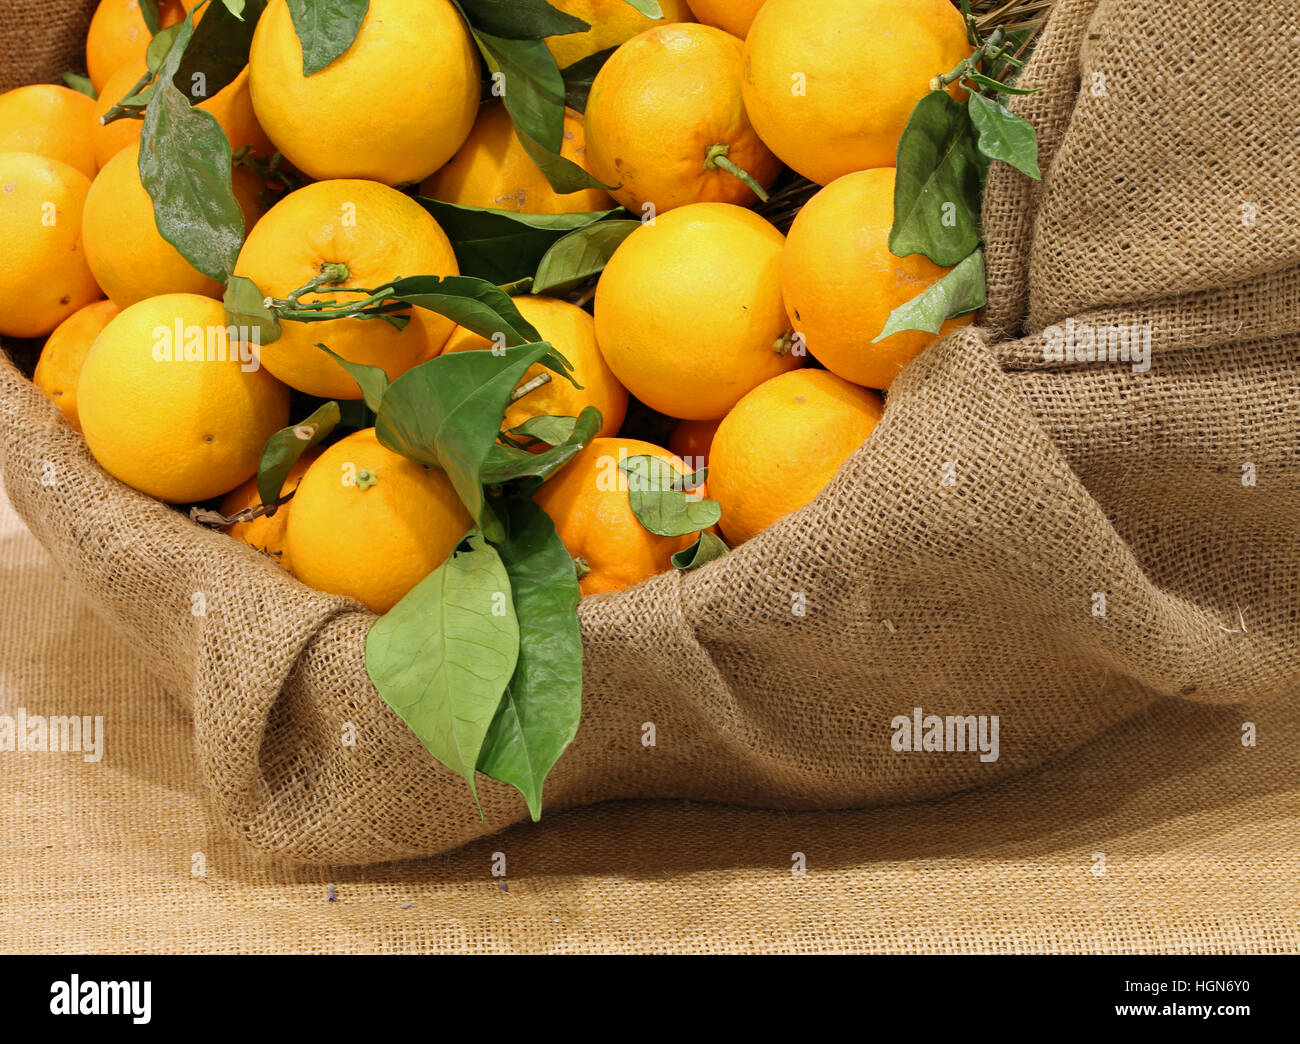 Leinensack mit natürlichen Orangen mit grünen Blättern Stockfoto